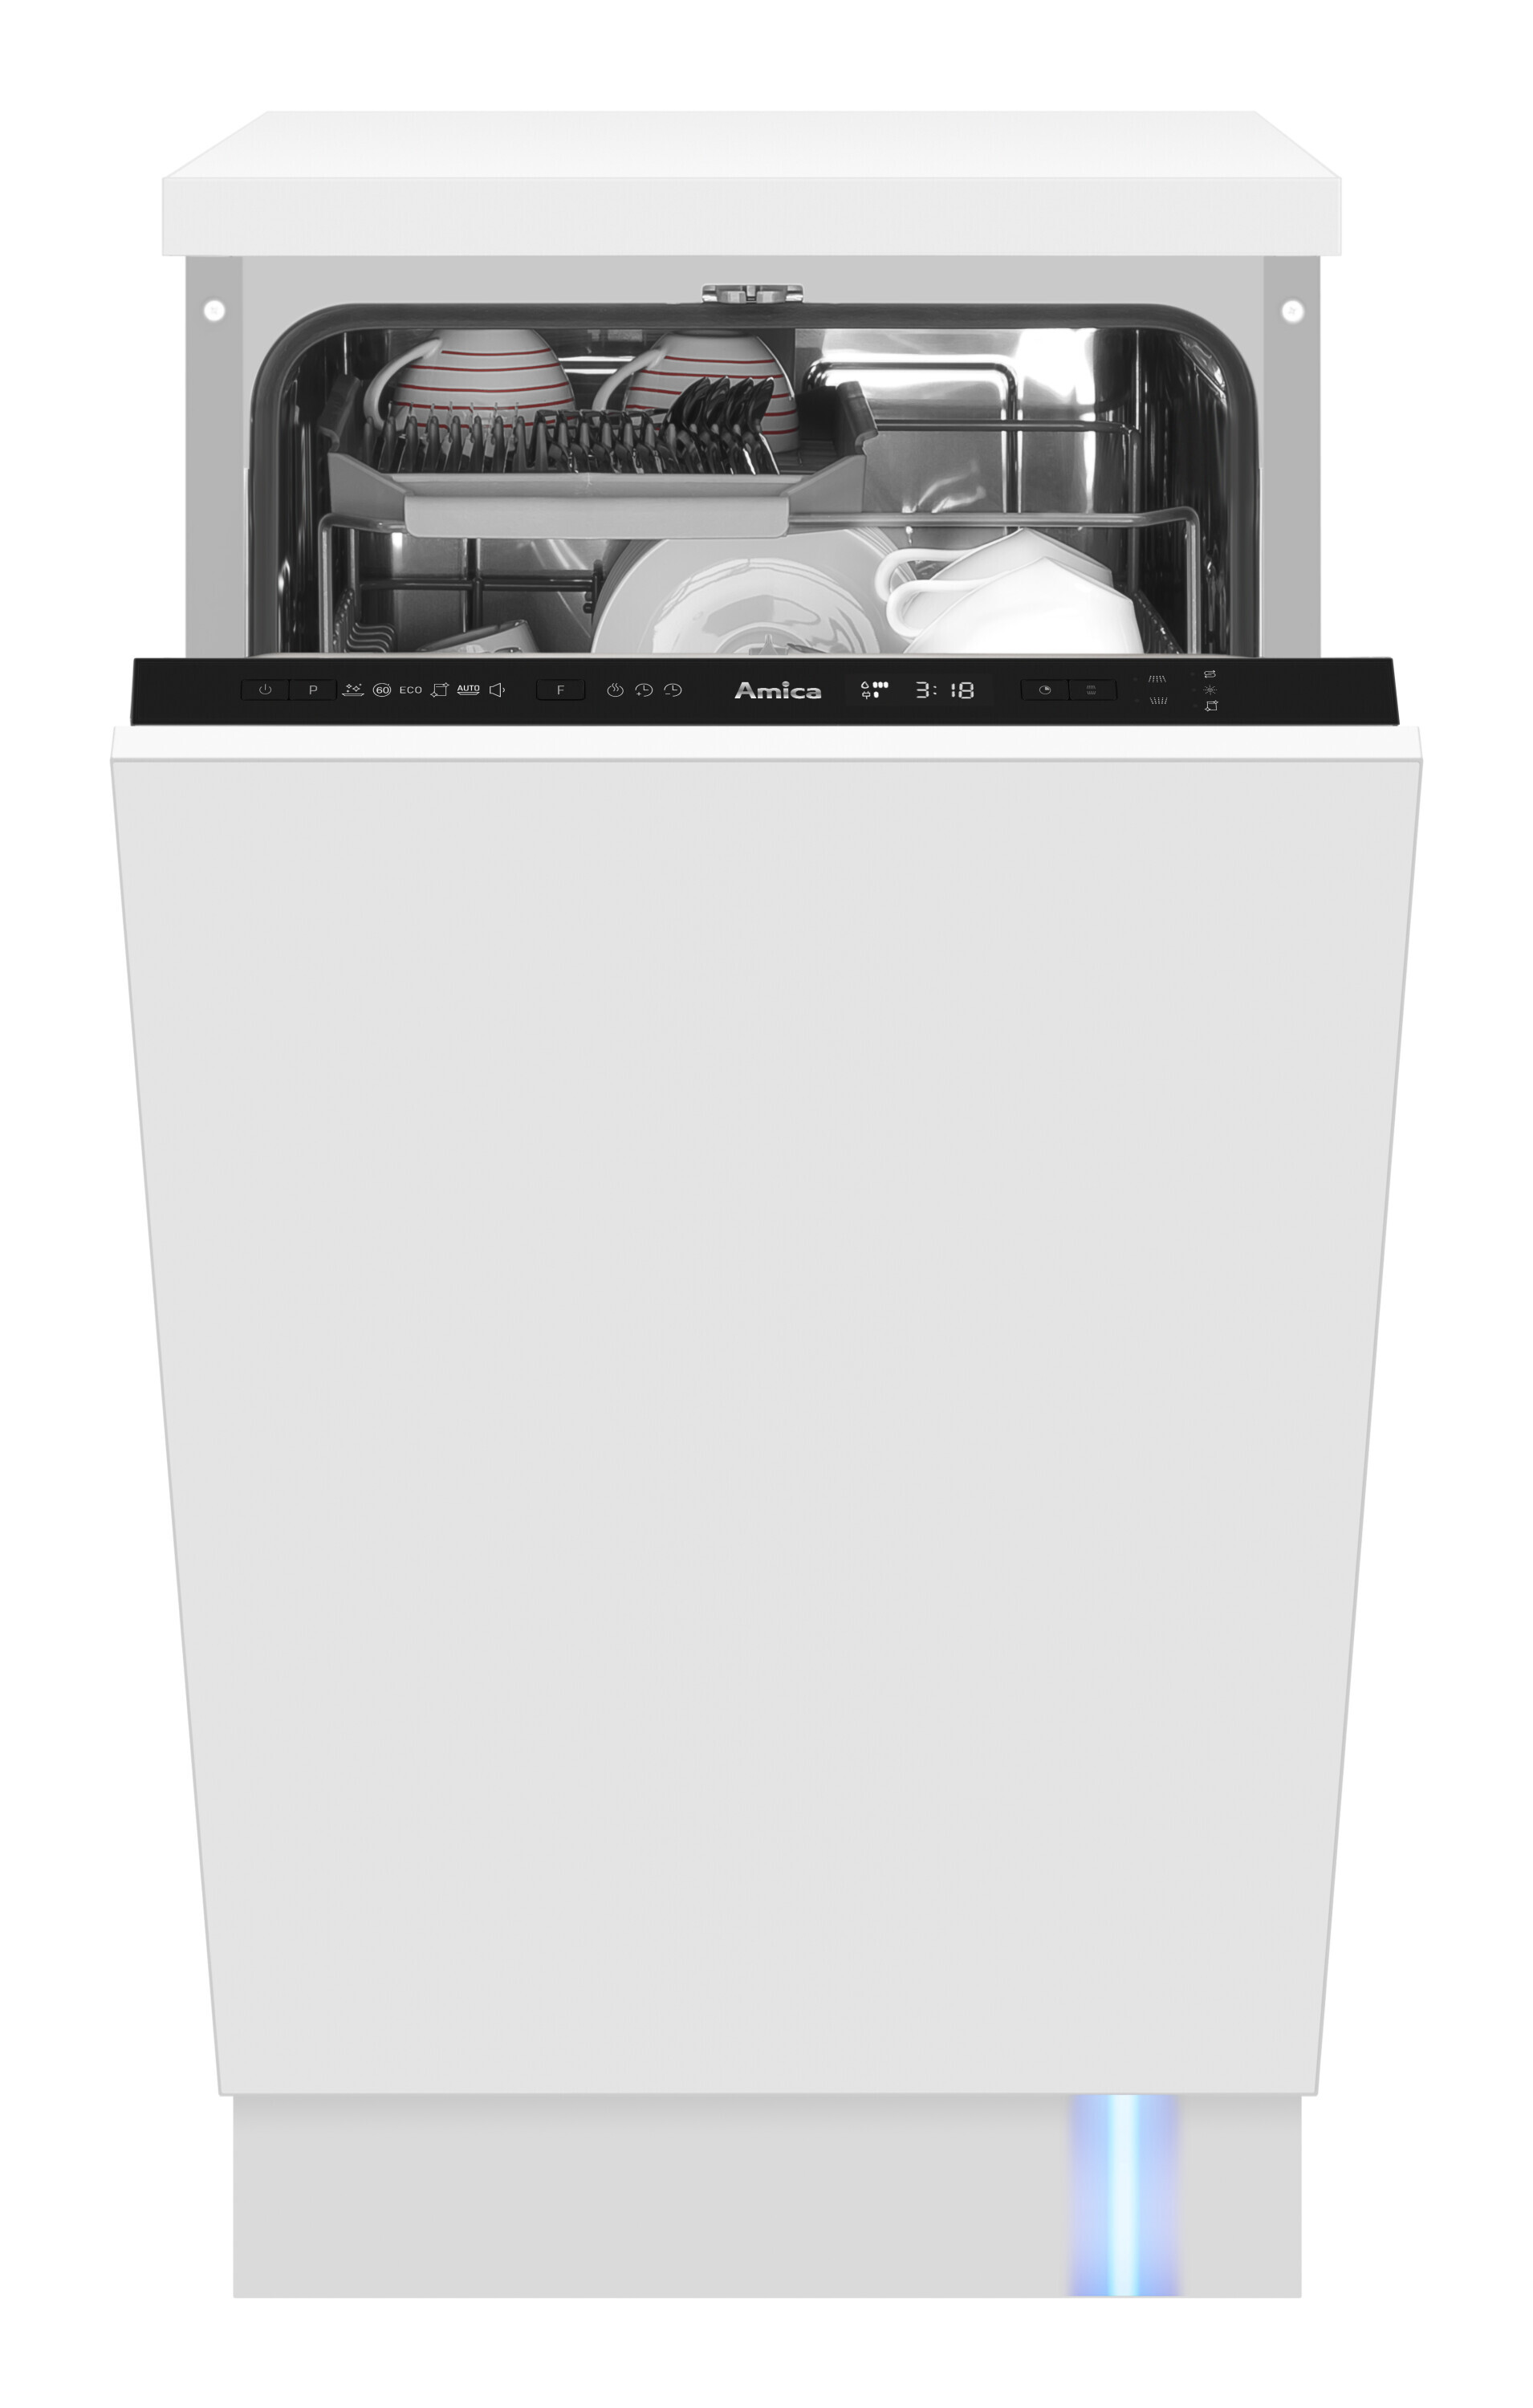 Beépített mosogatógép